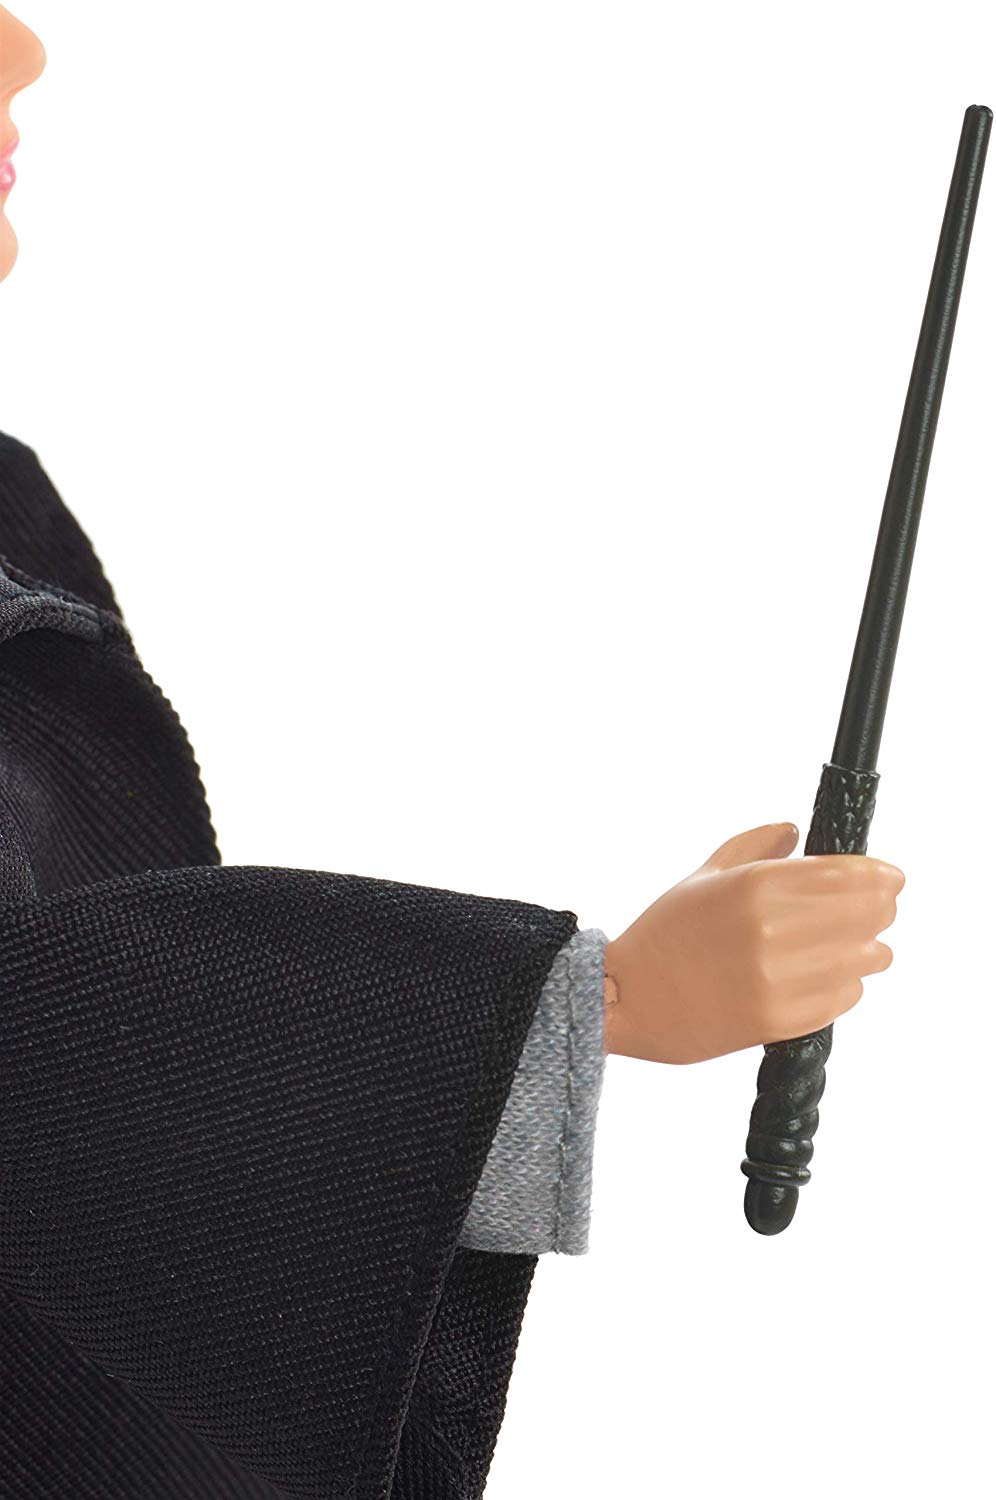 Boneco Ginny Weasley Articulado Mattel 25cm Oficial Licenciado